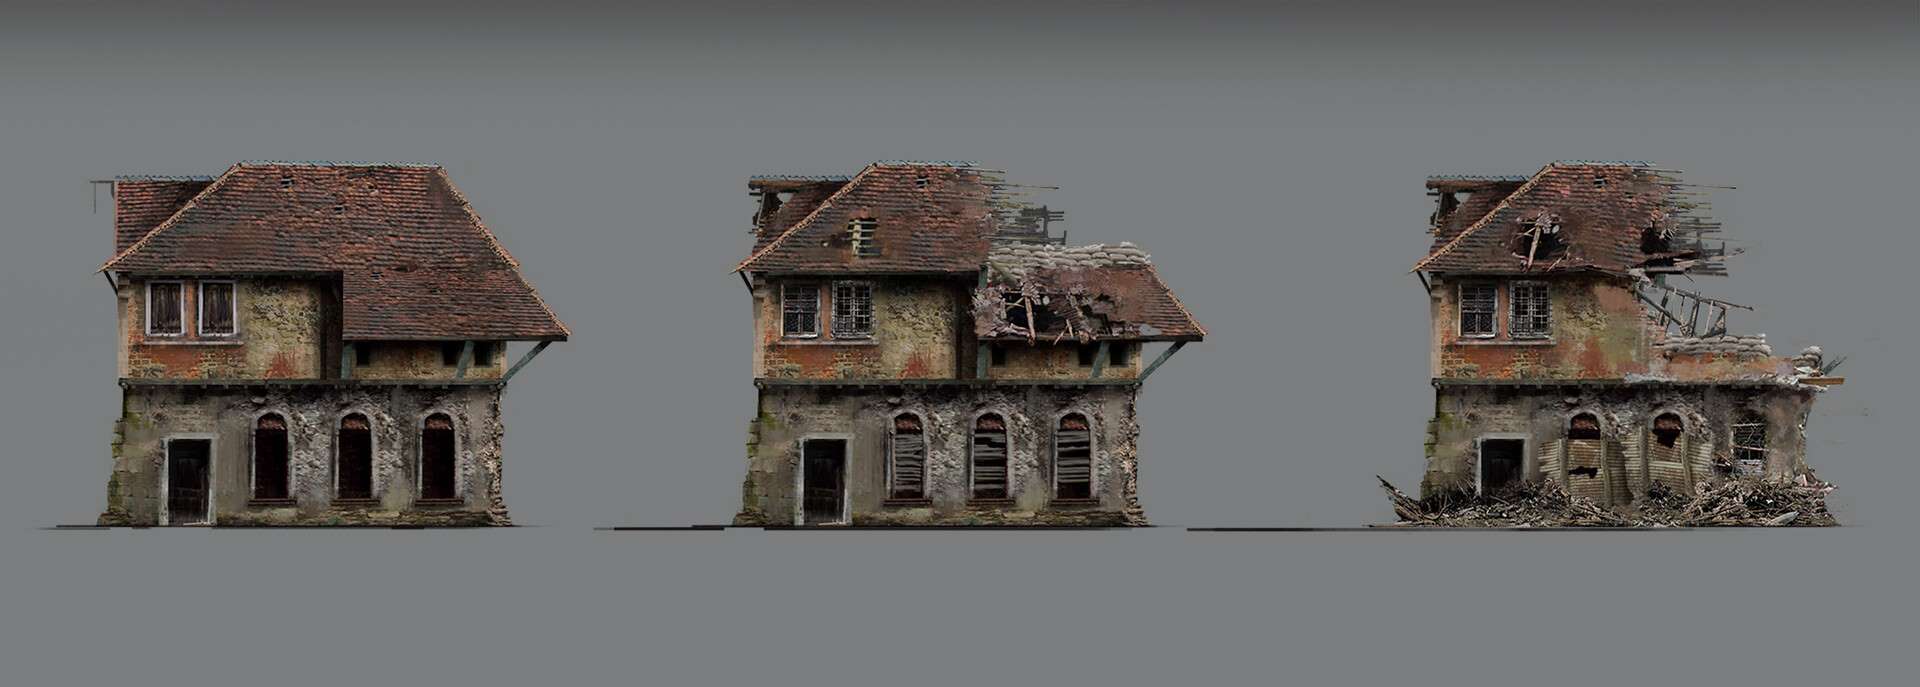 古老的房屋建筑素材